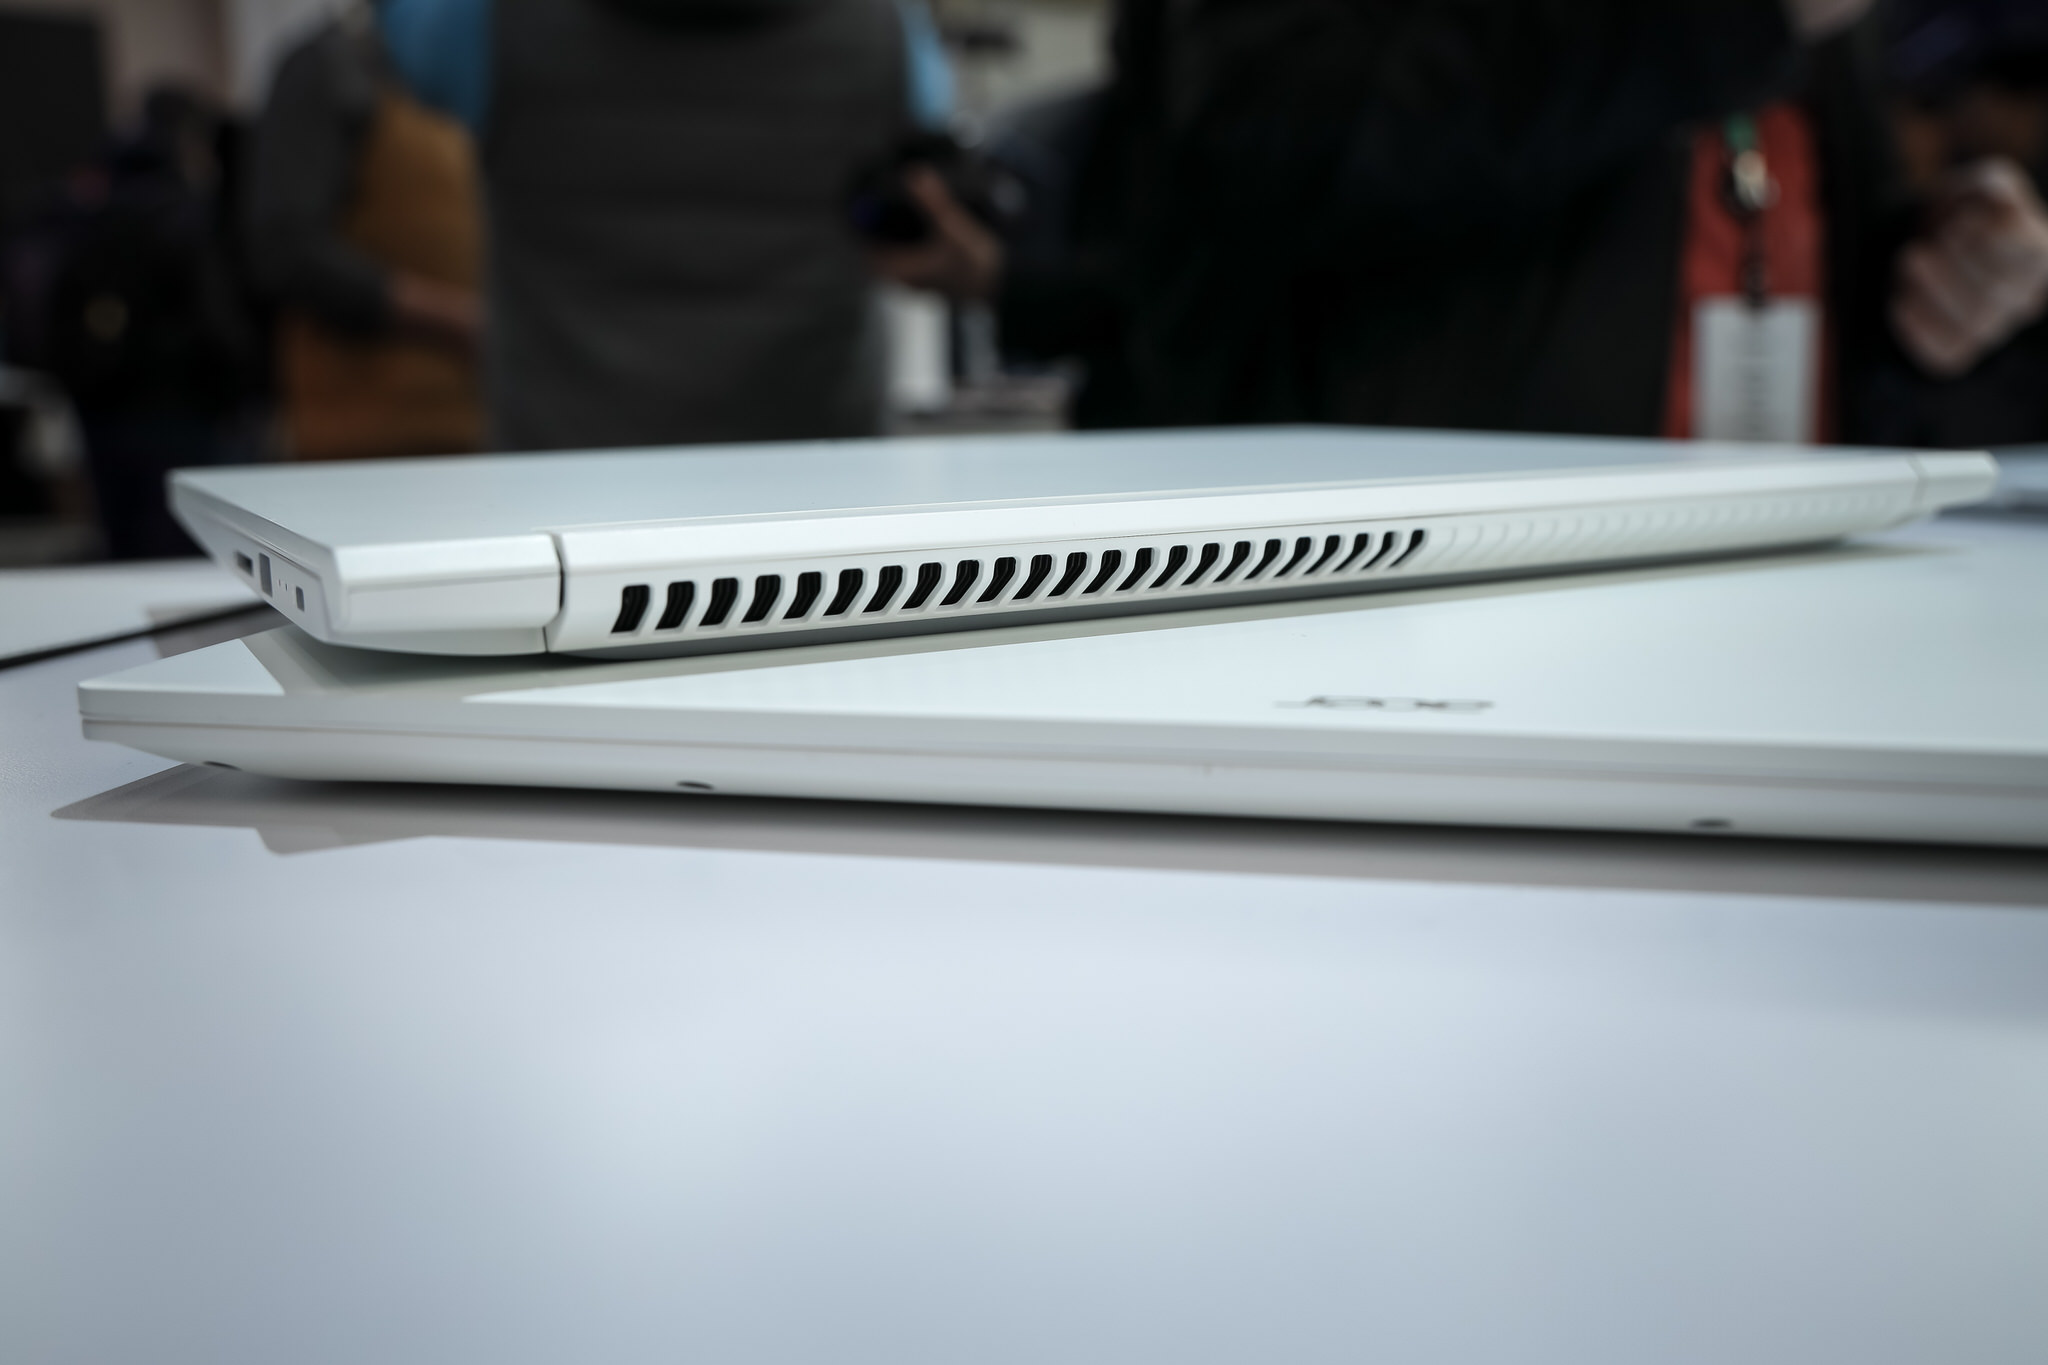 Acer giới thiệu ConceptD, 7 dòng sản phẩm được thiết kế cho nhà sáng tạo